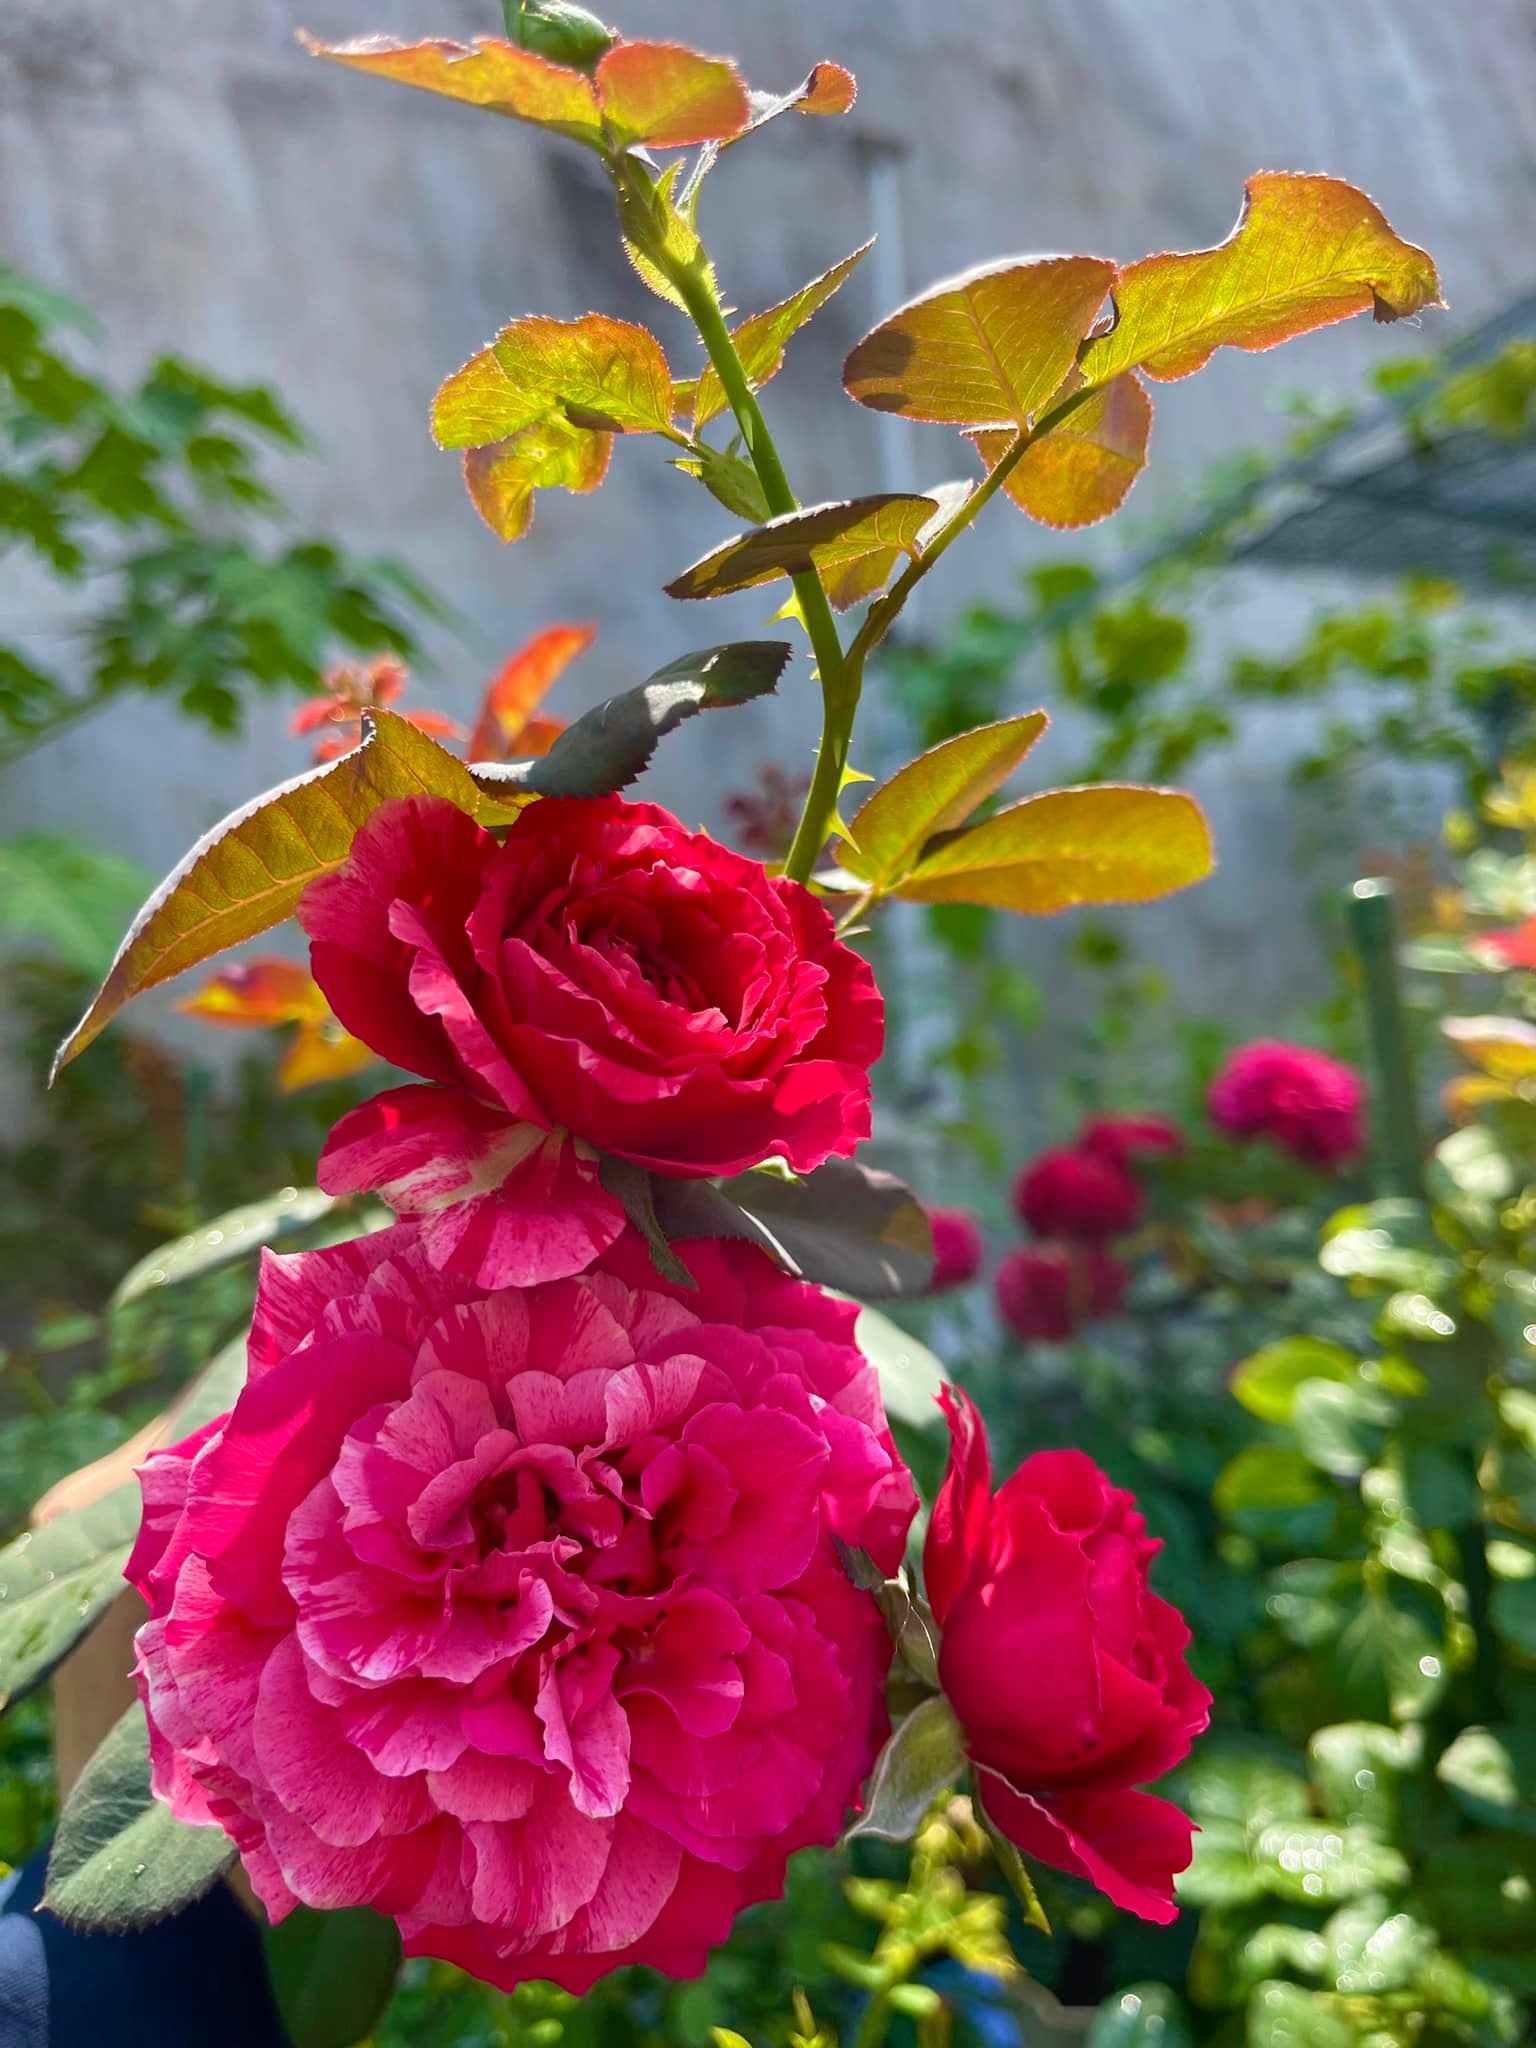 Khu vườn hoa hồng đẹp ngây ngất trên sân thượng ở TP HCM - Ảnh 14.